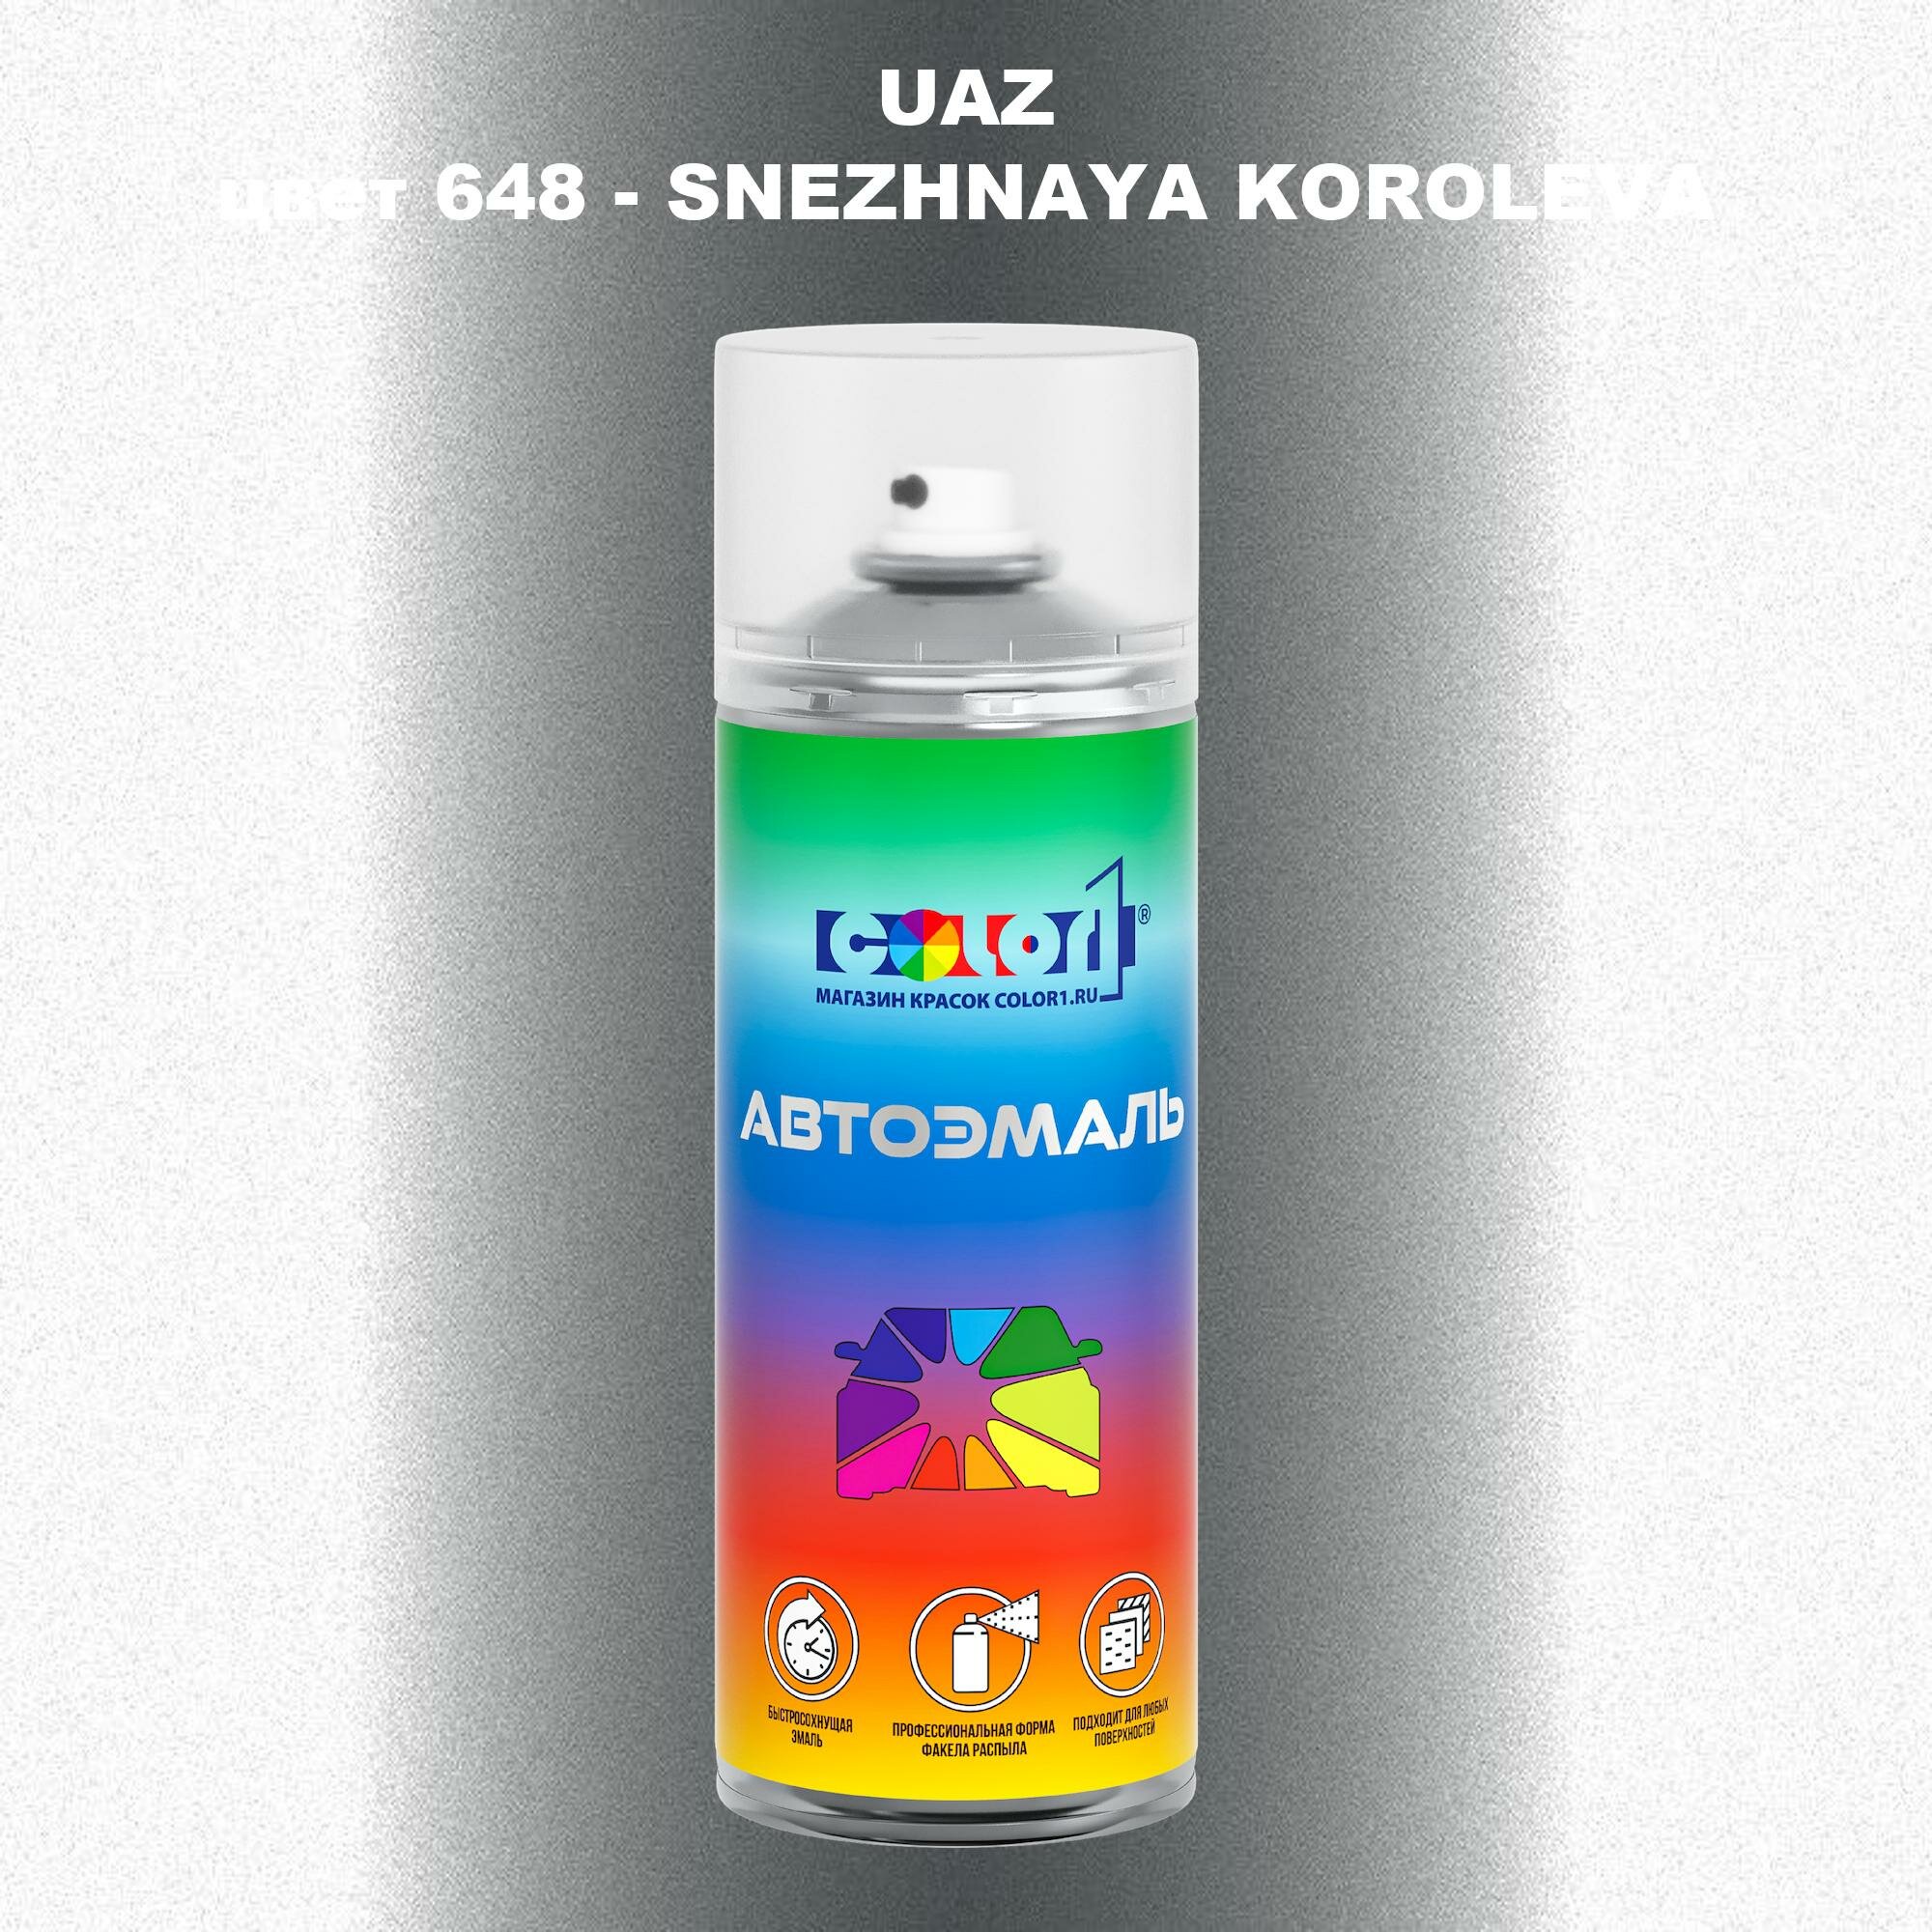 Аэрозольная краска COLOR1 для UAZ, цвет 648 - SNEZHNAYA KOROLEVA